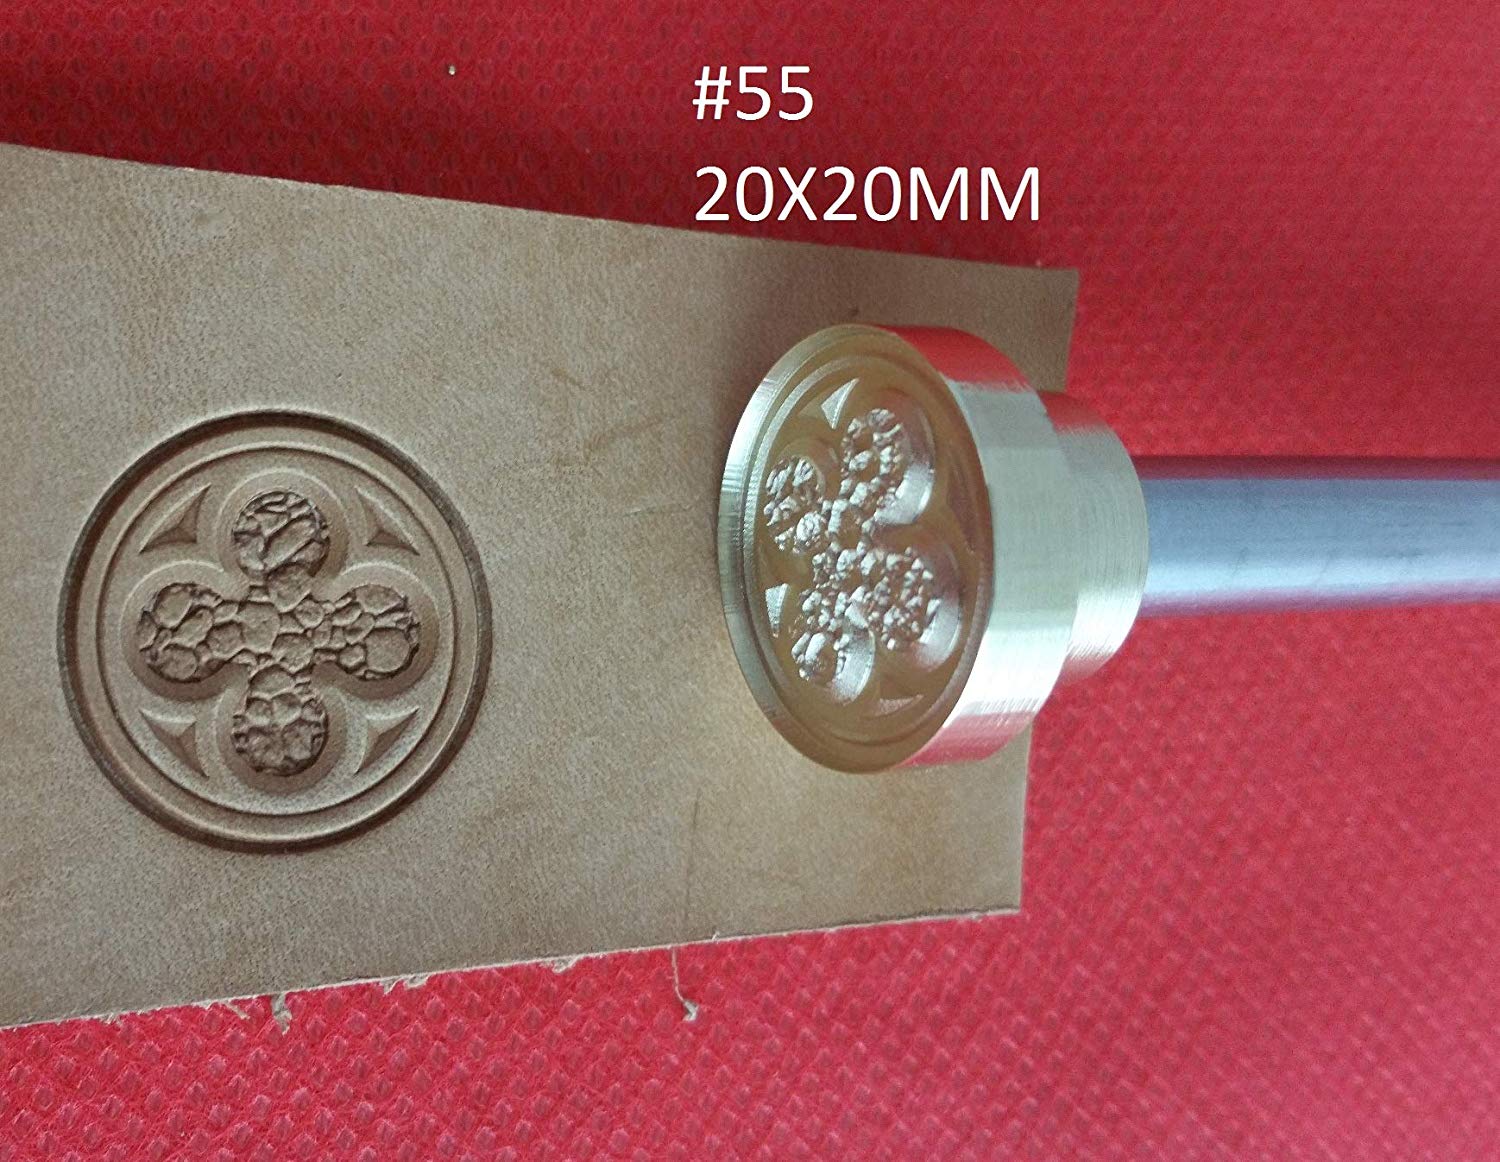 Leather stamp tool #55 - SpasGoranov